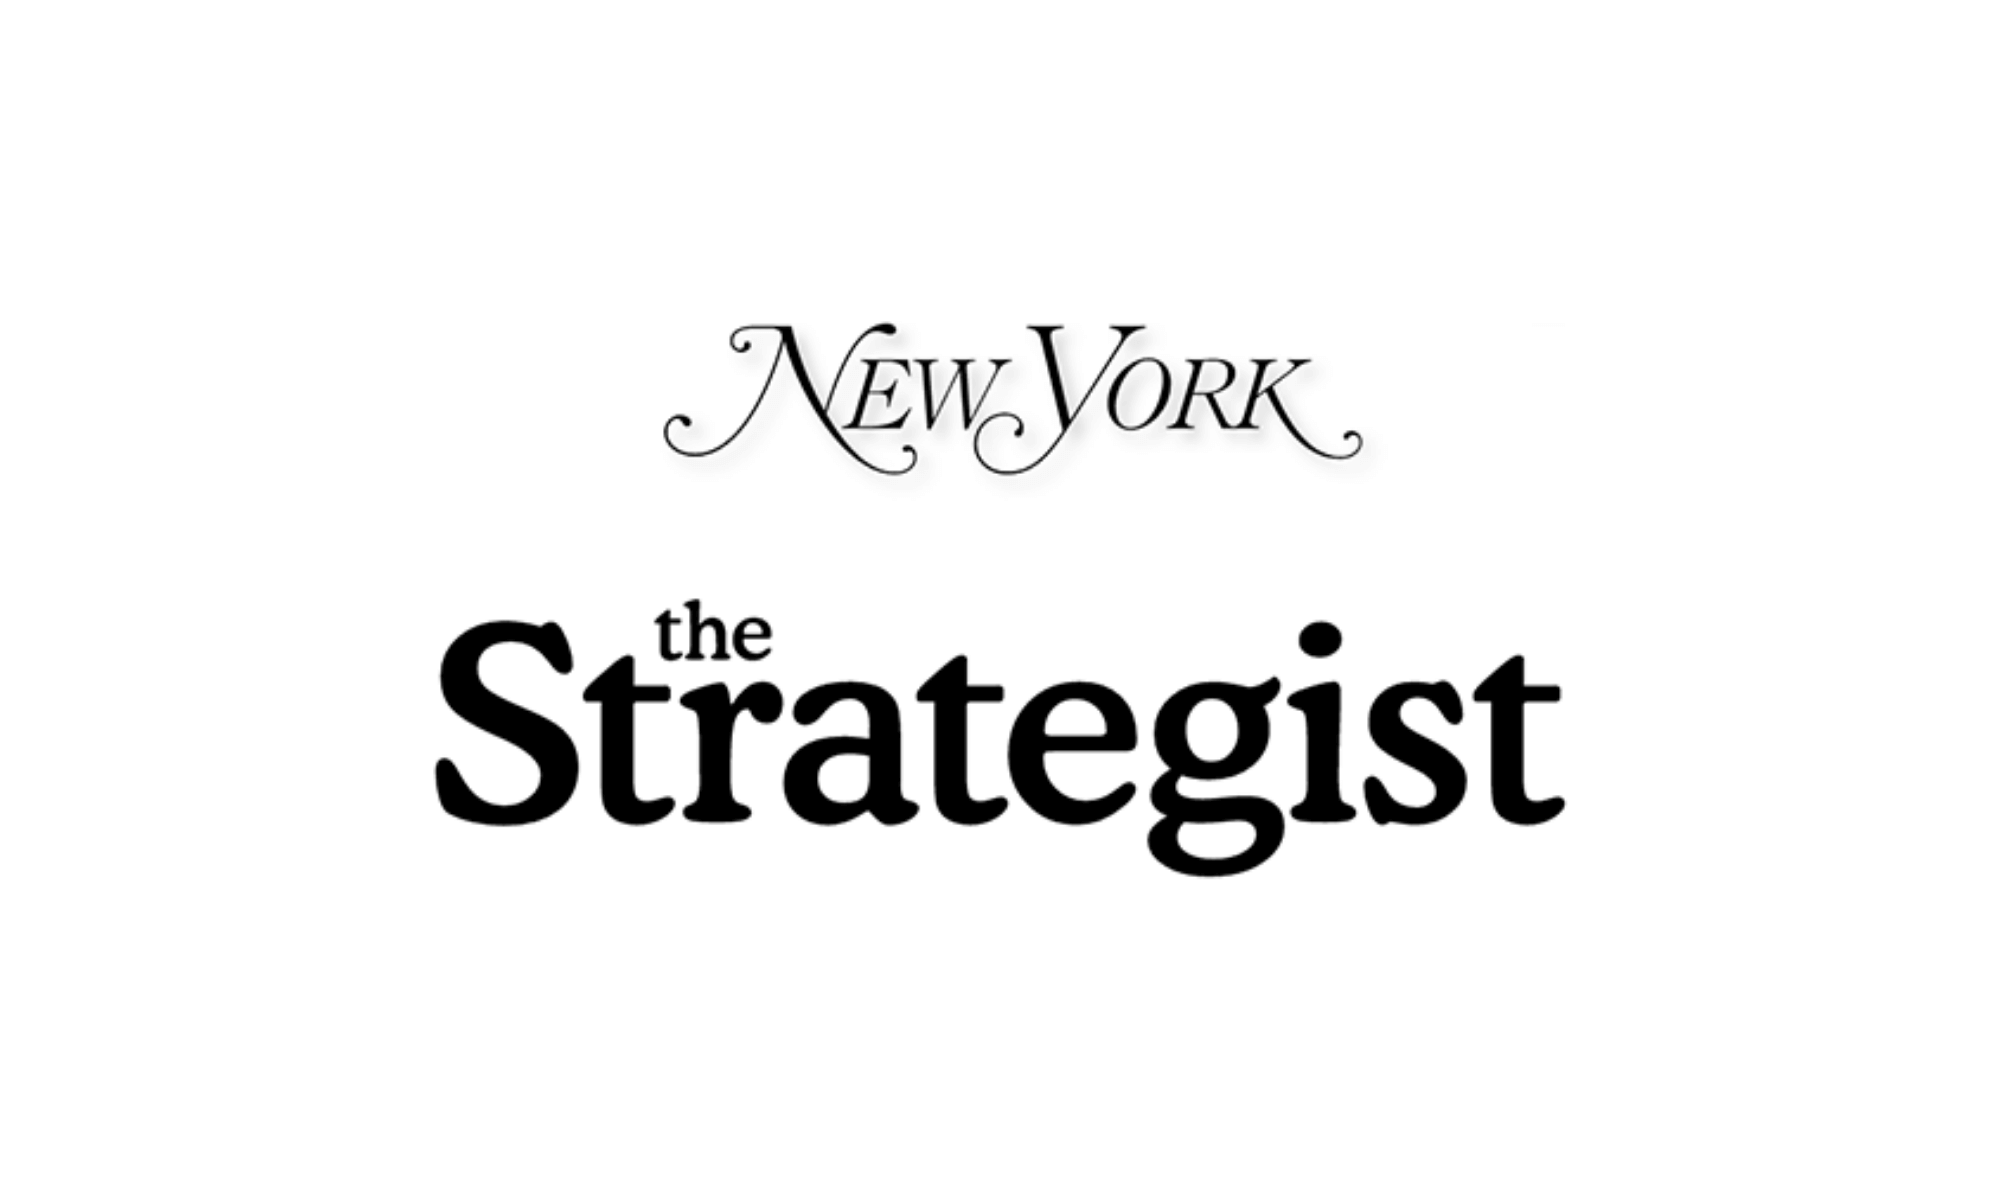 New York Magazine: The Strategist